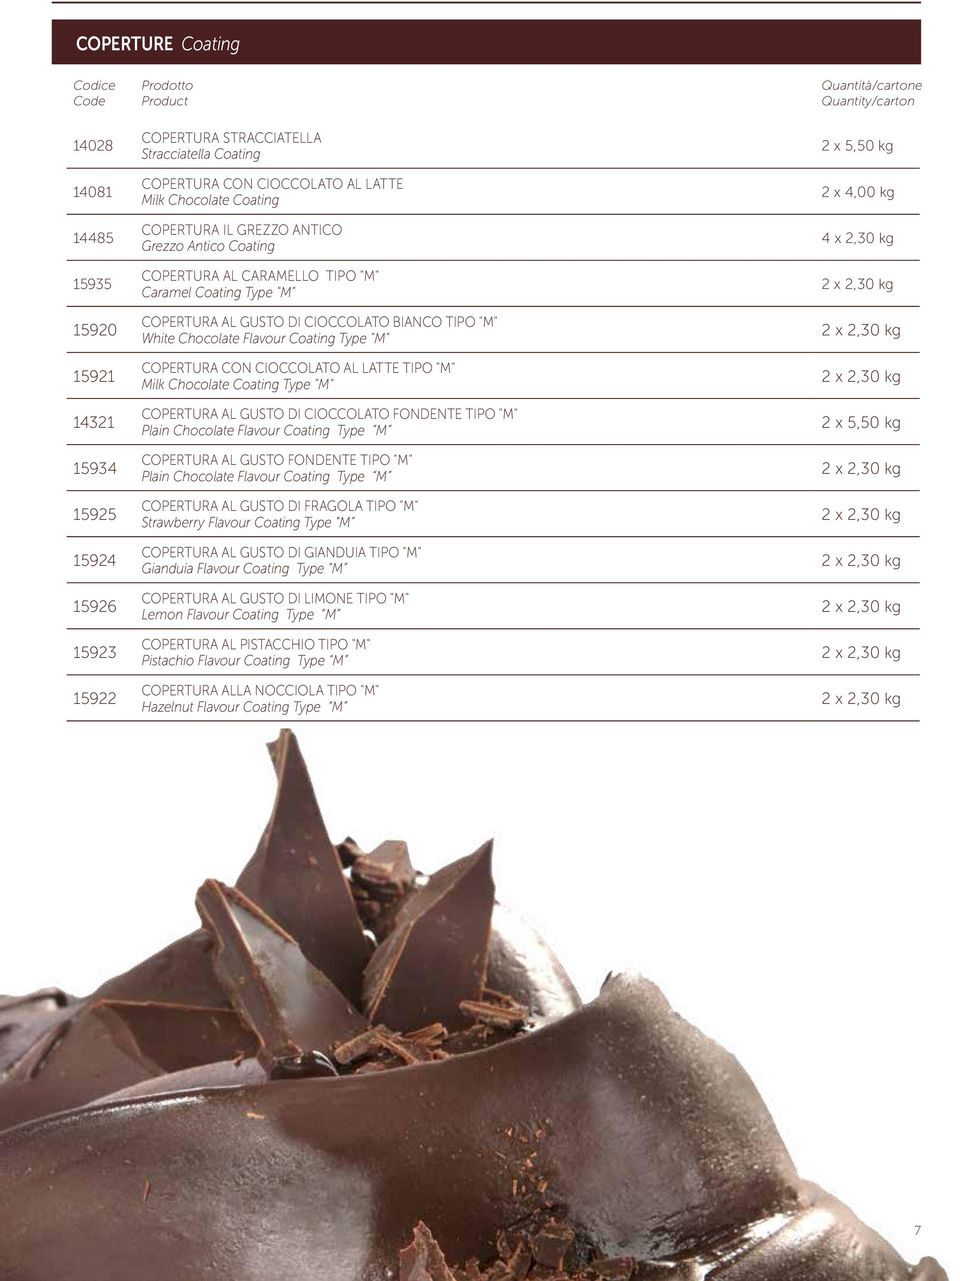 COPERTURA CON CIOCCOLATO AL LATTE TIPO "M" Milk Chocolate Coating Type "M" COPERTURA AL GUSTO DI CIOCCOLATO FONDENTE TIPO "M" Plain Chocolate Flavour Coating Type )A!0 M!